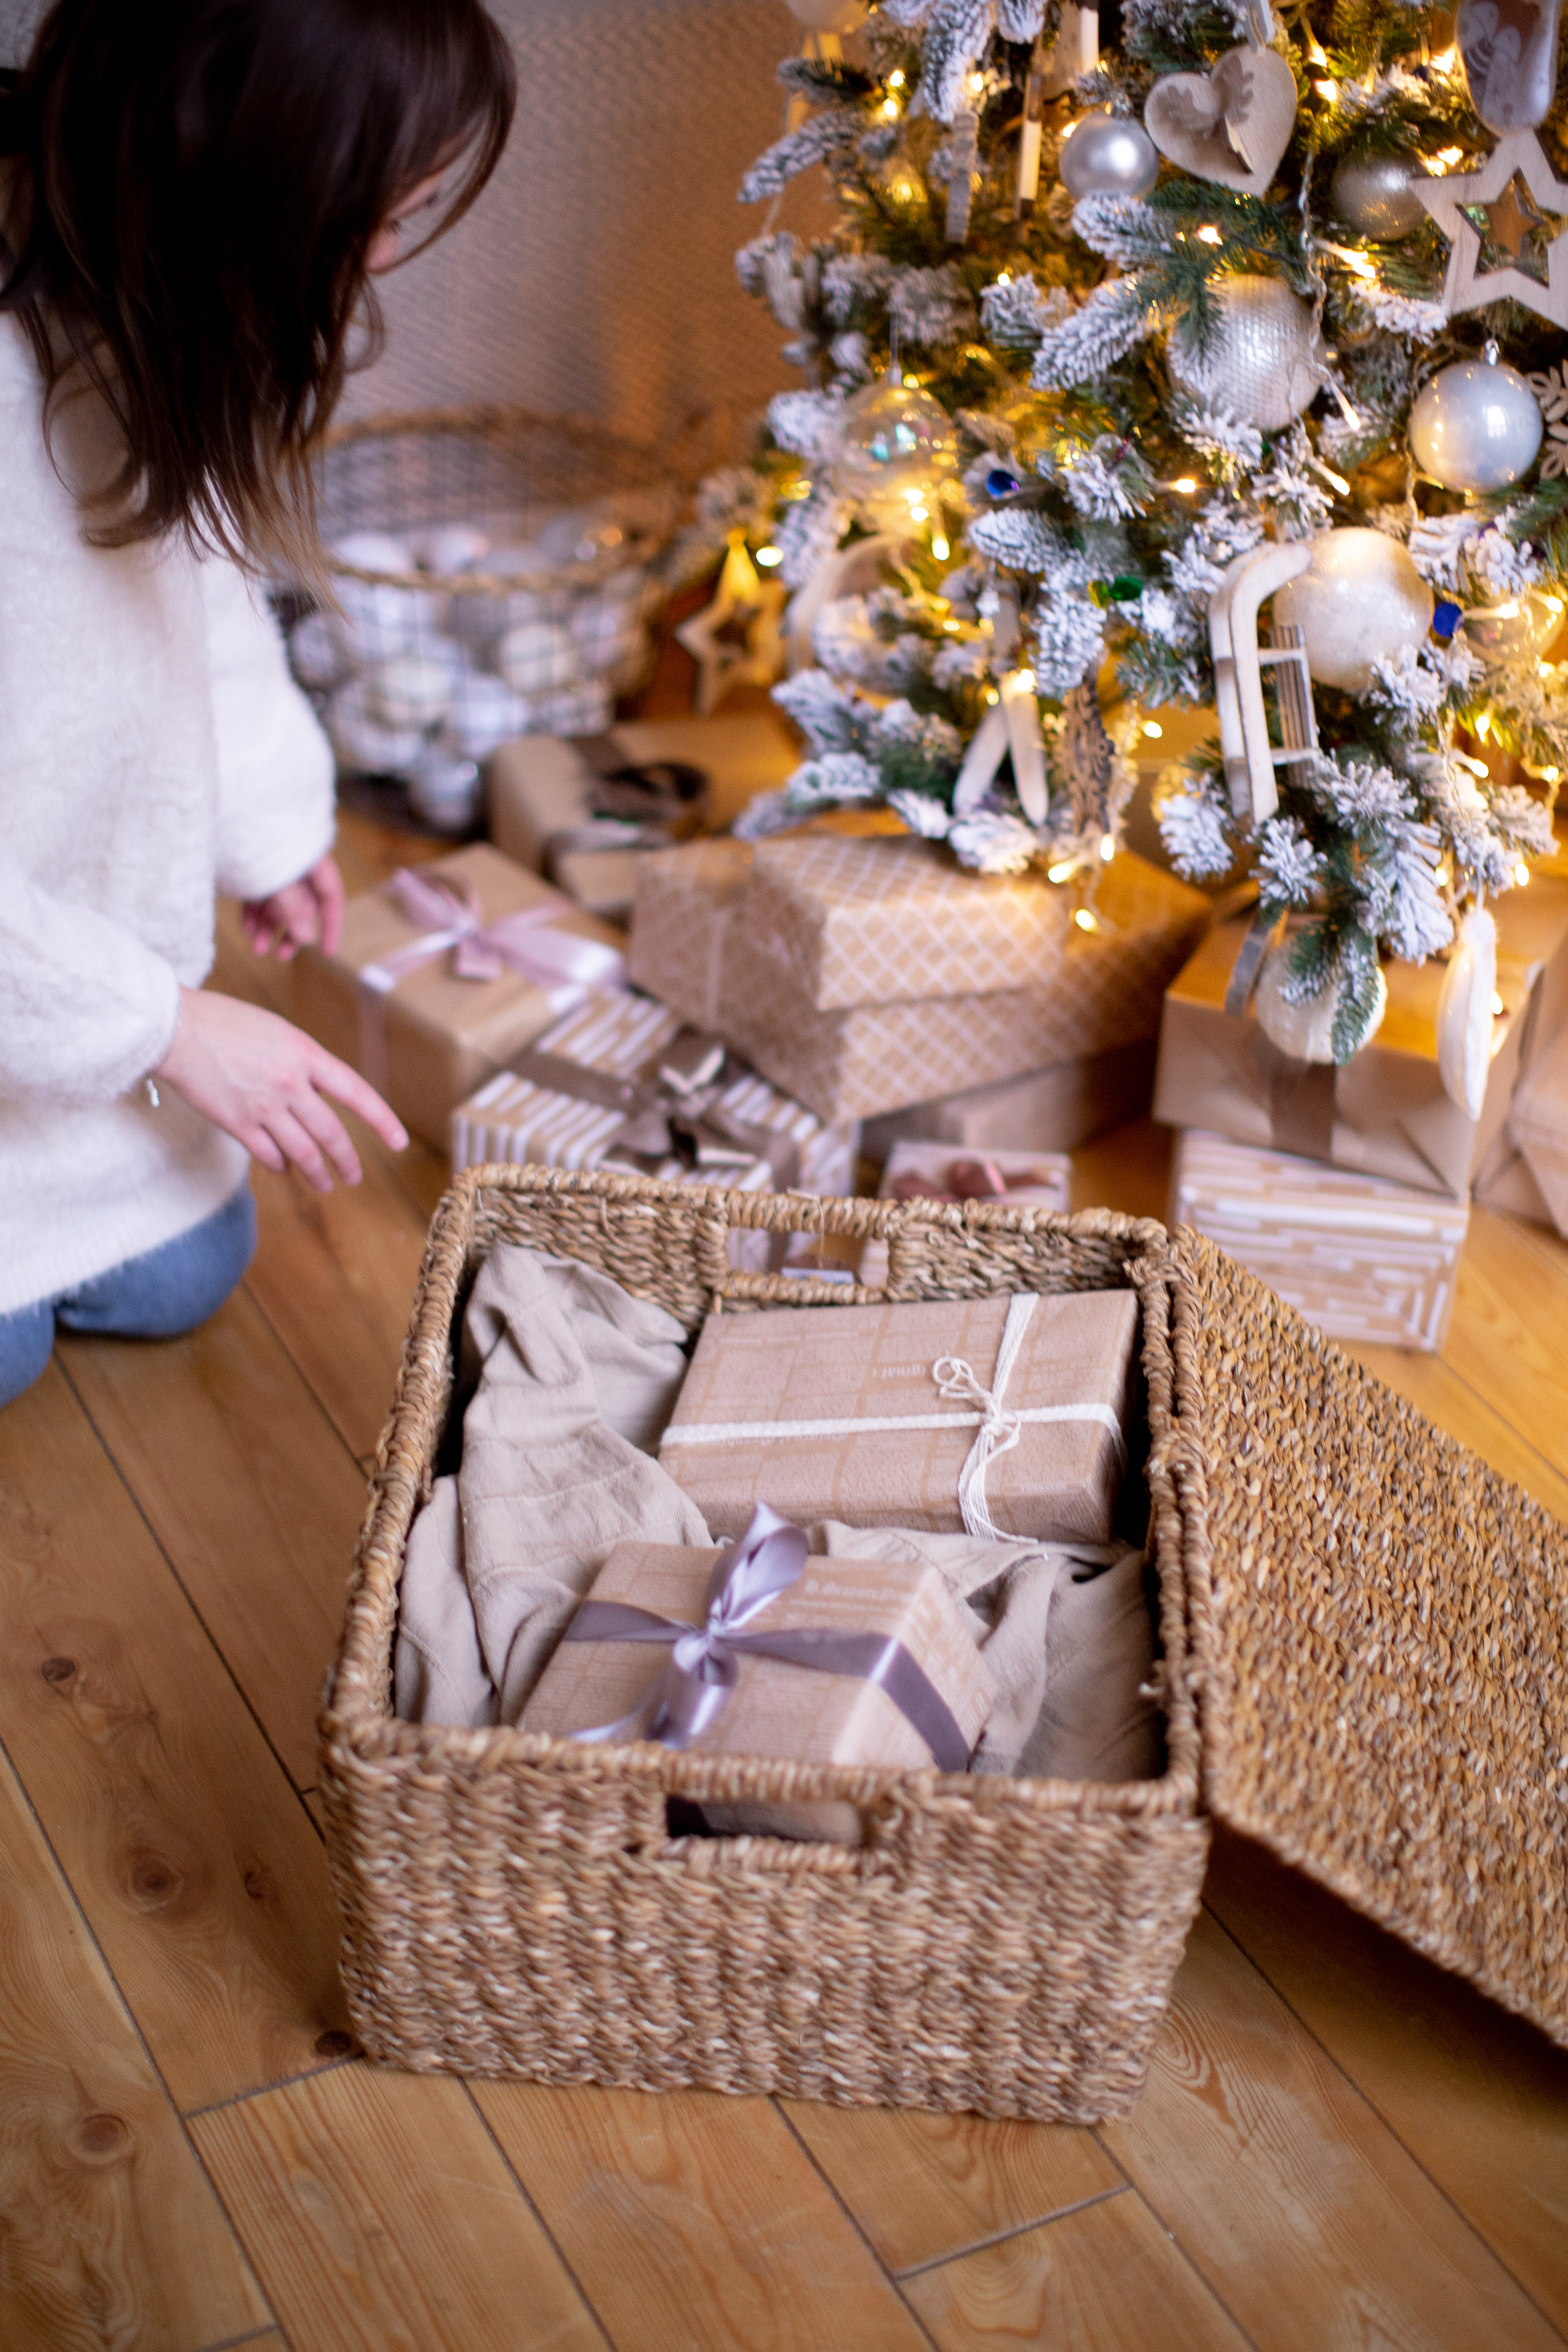 Плетеные корзины в качестве уникального новогоднего декора